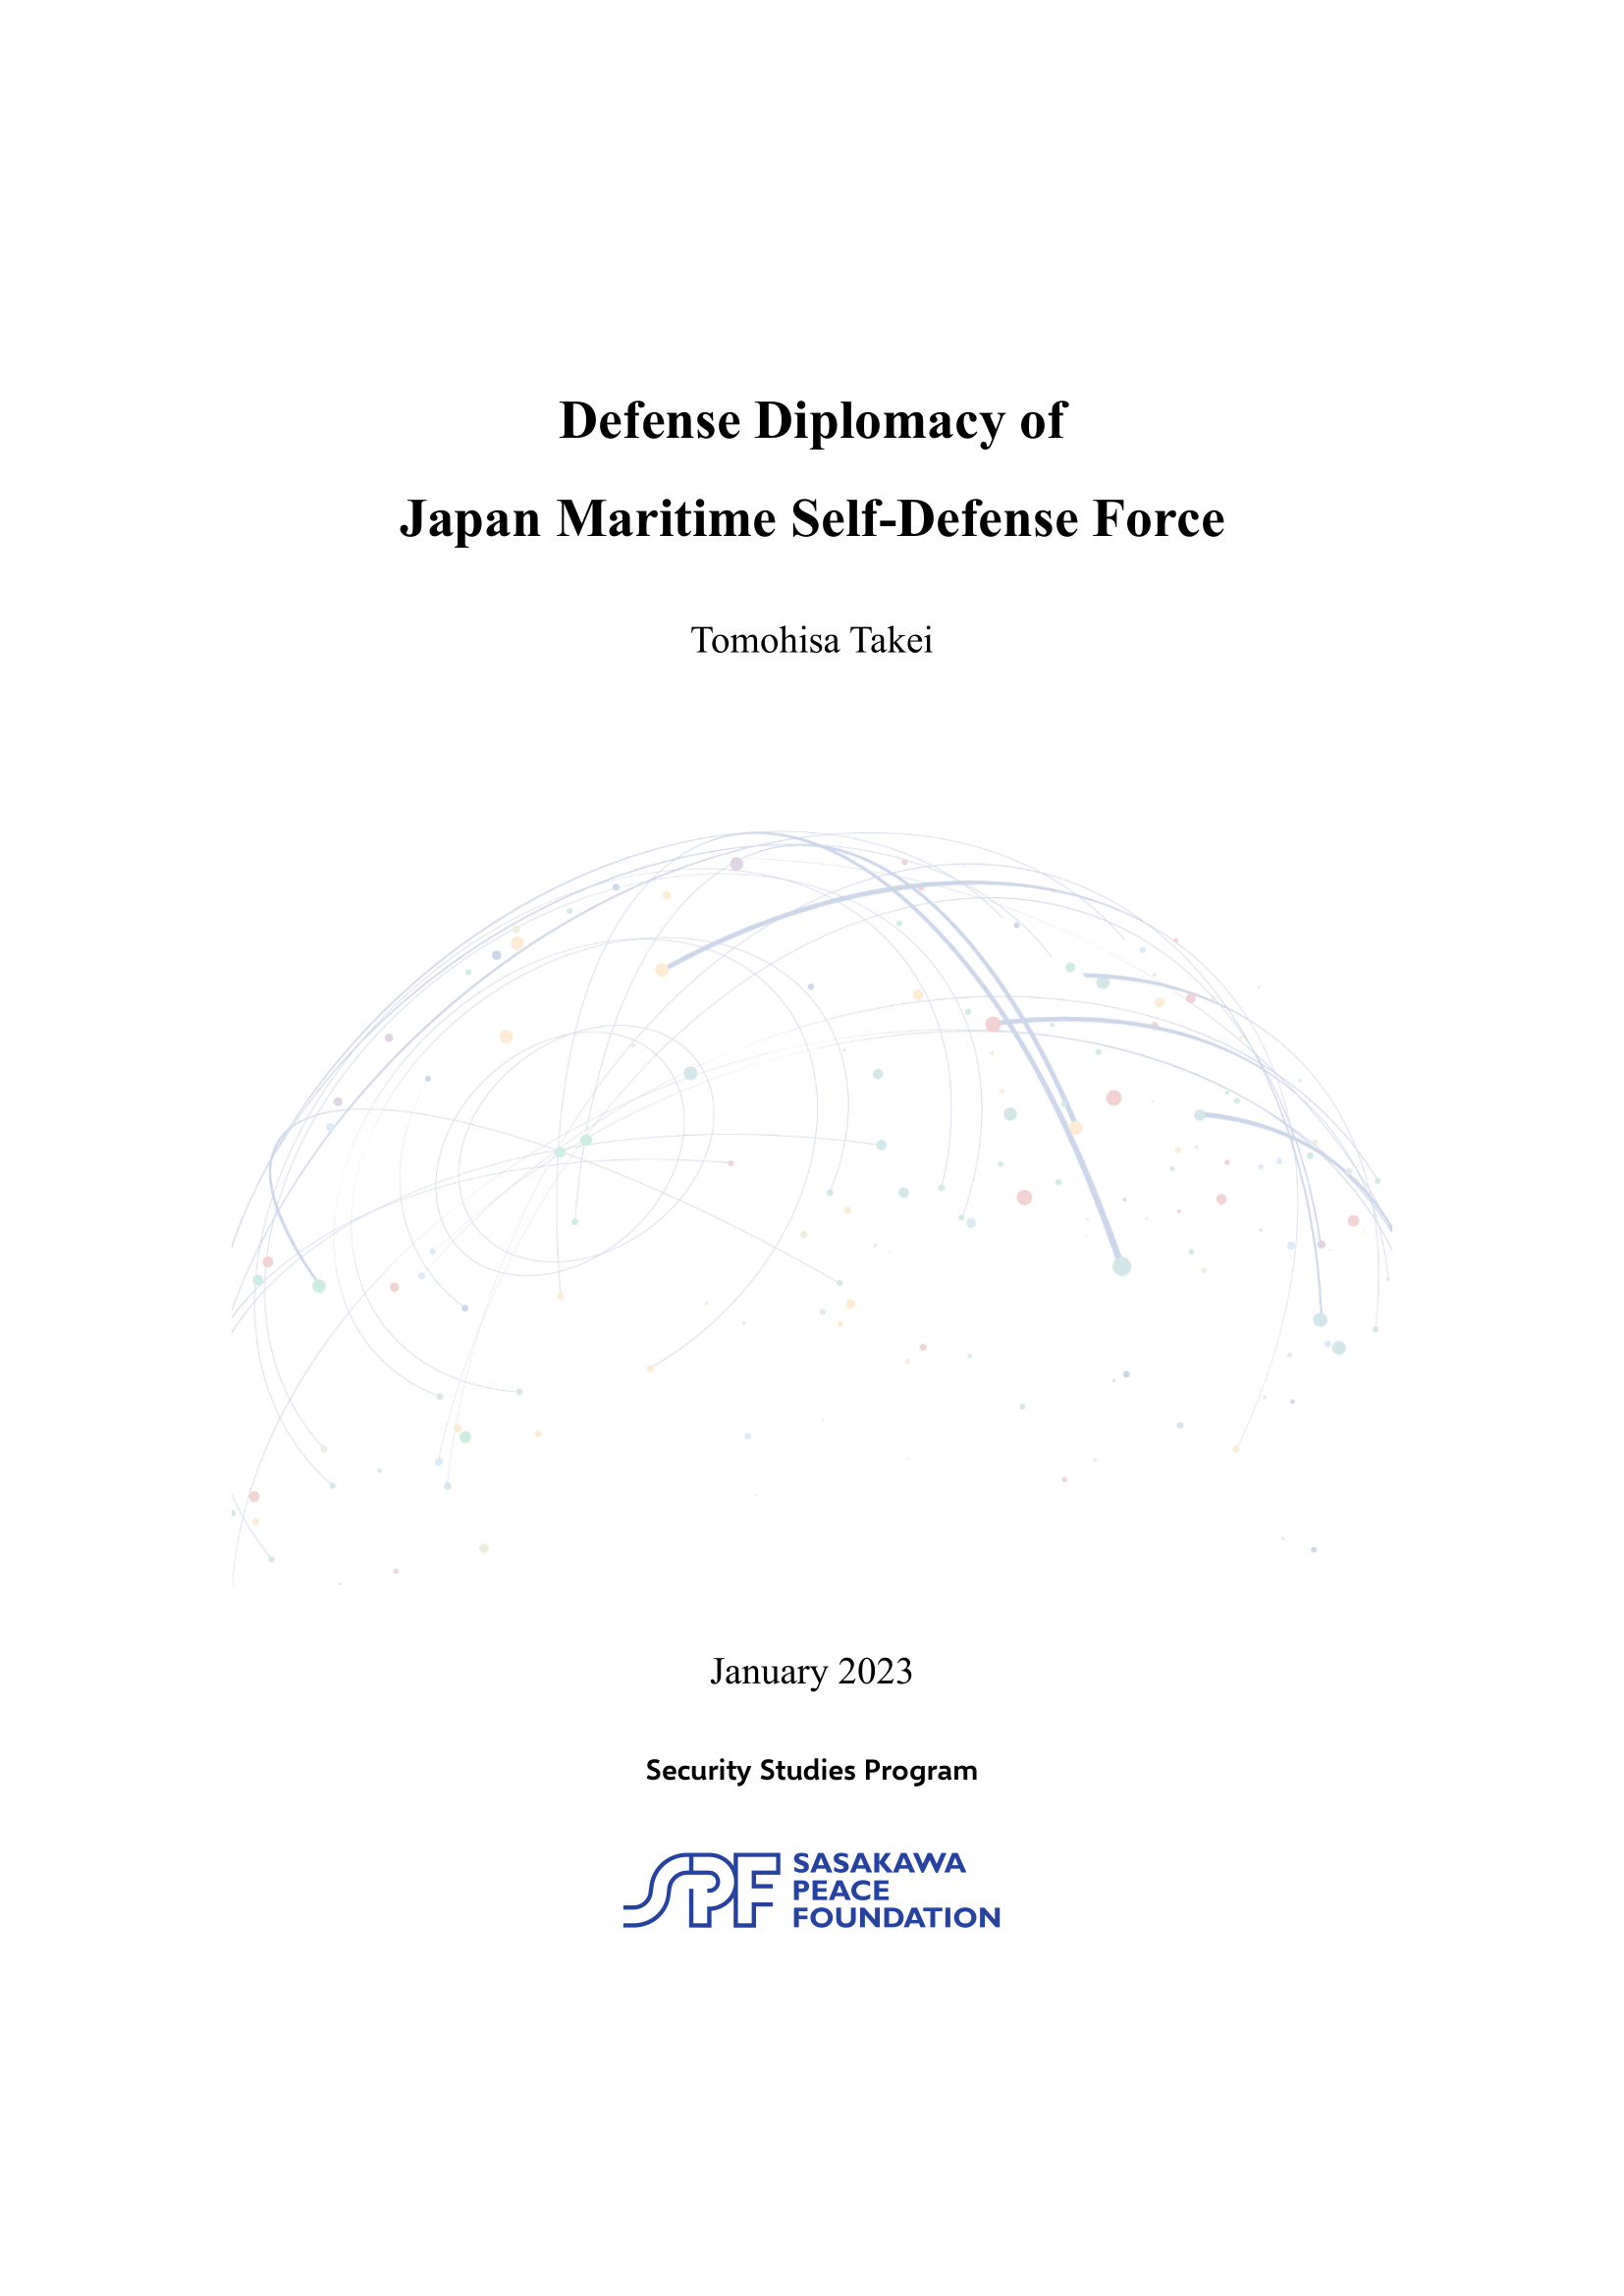 Defense Diplomacy of Japan Maritime Self-Defense Force